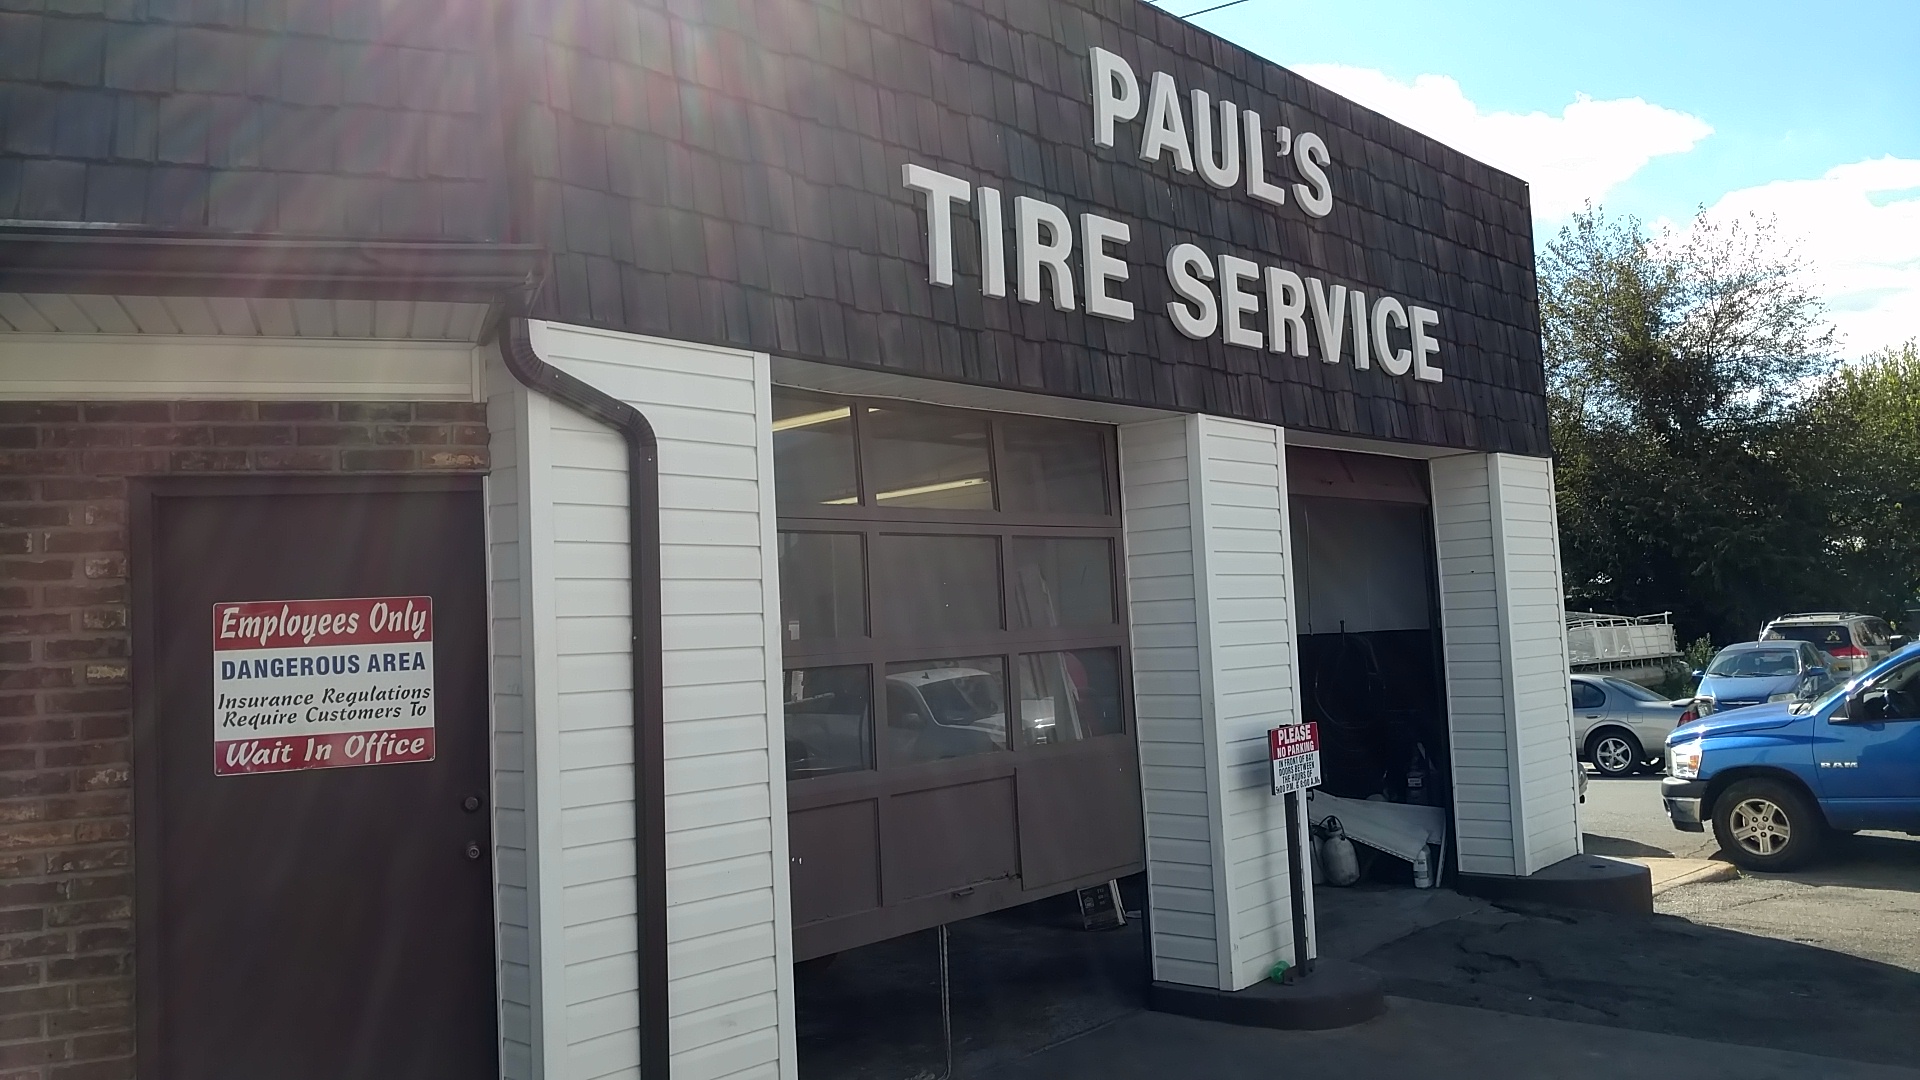 Paul's Tire Services